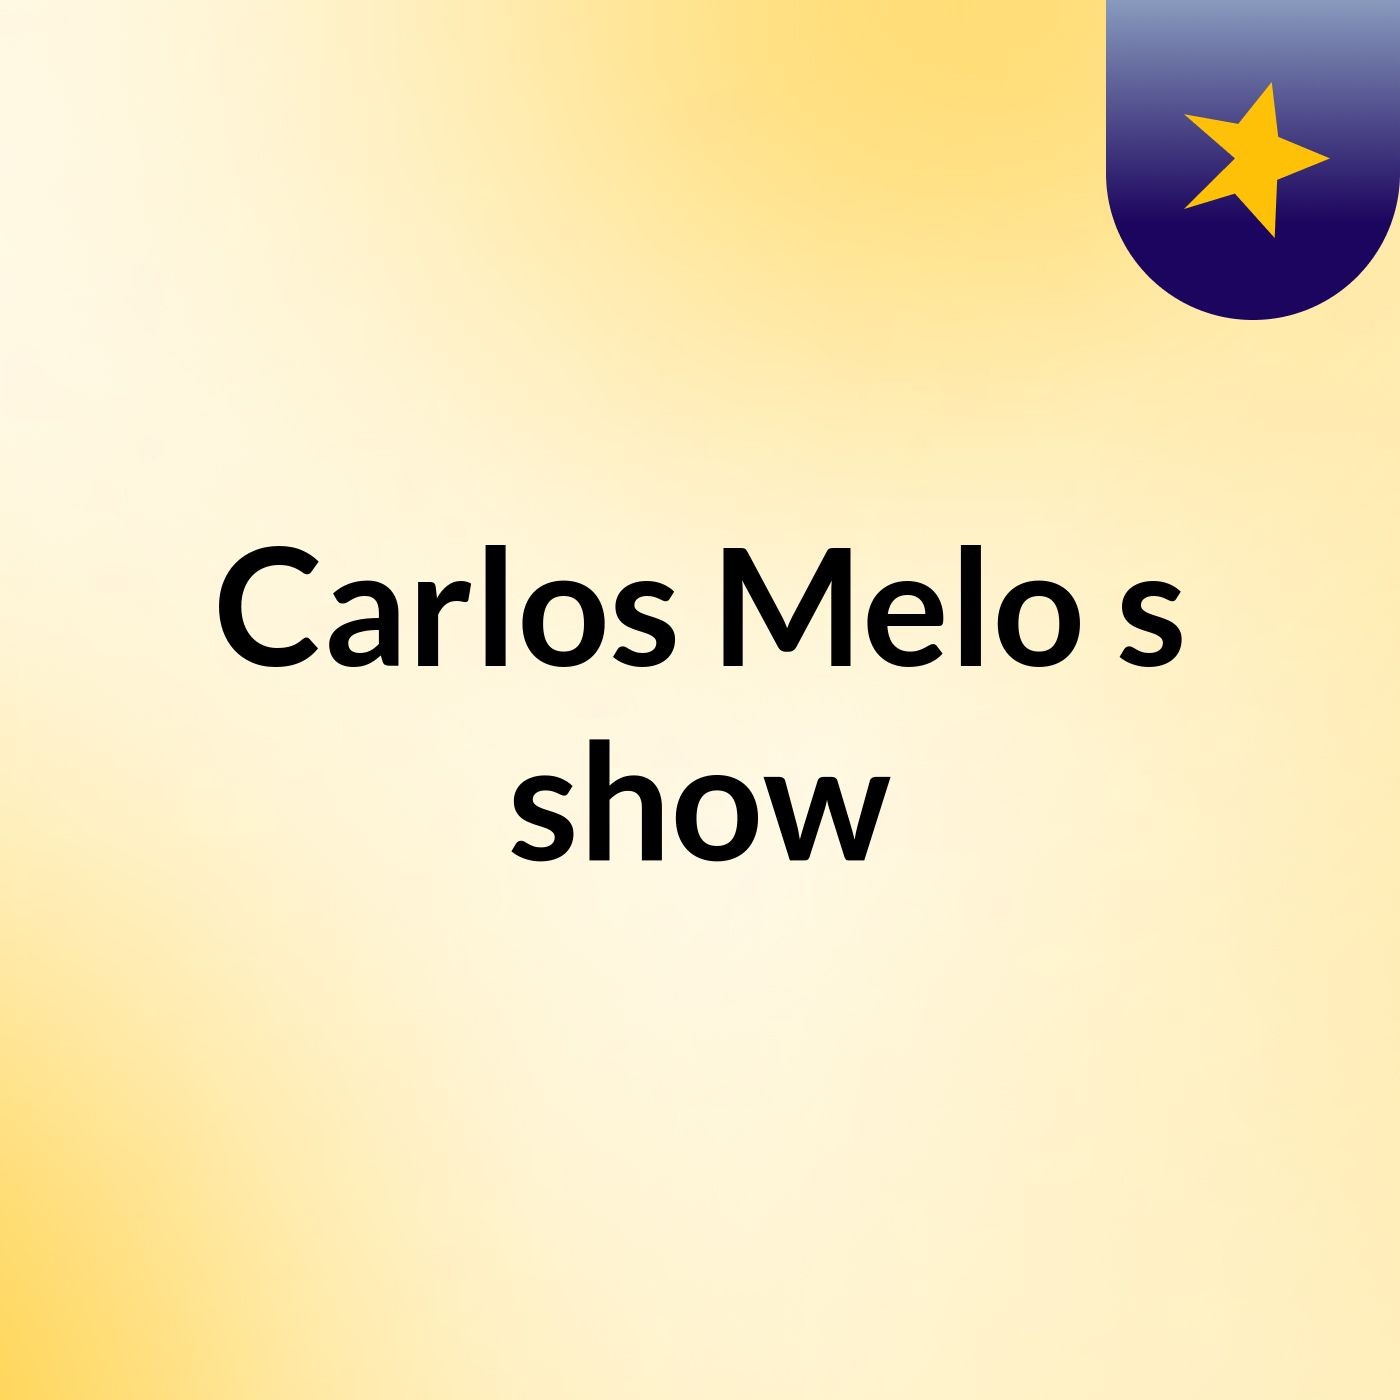 Carlos Melo's show